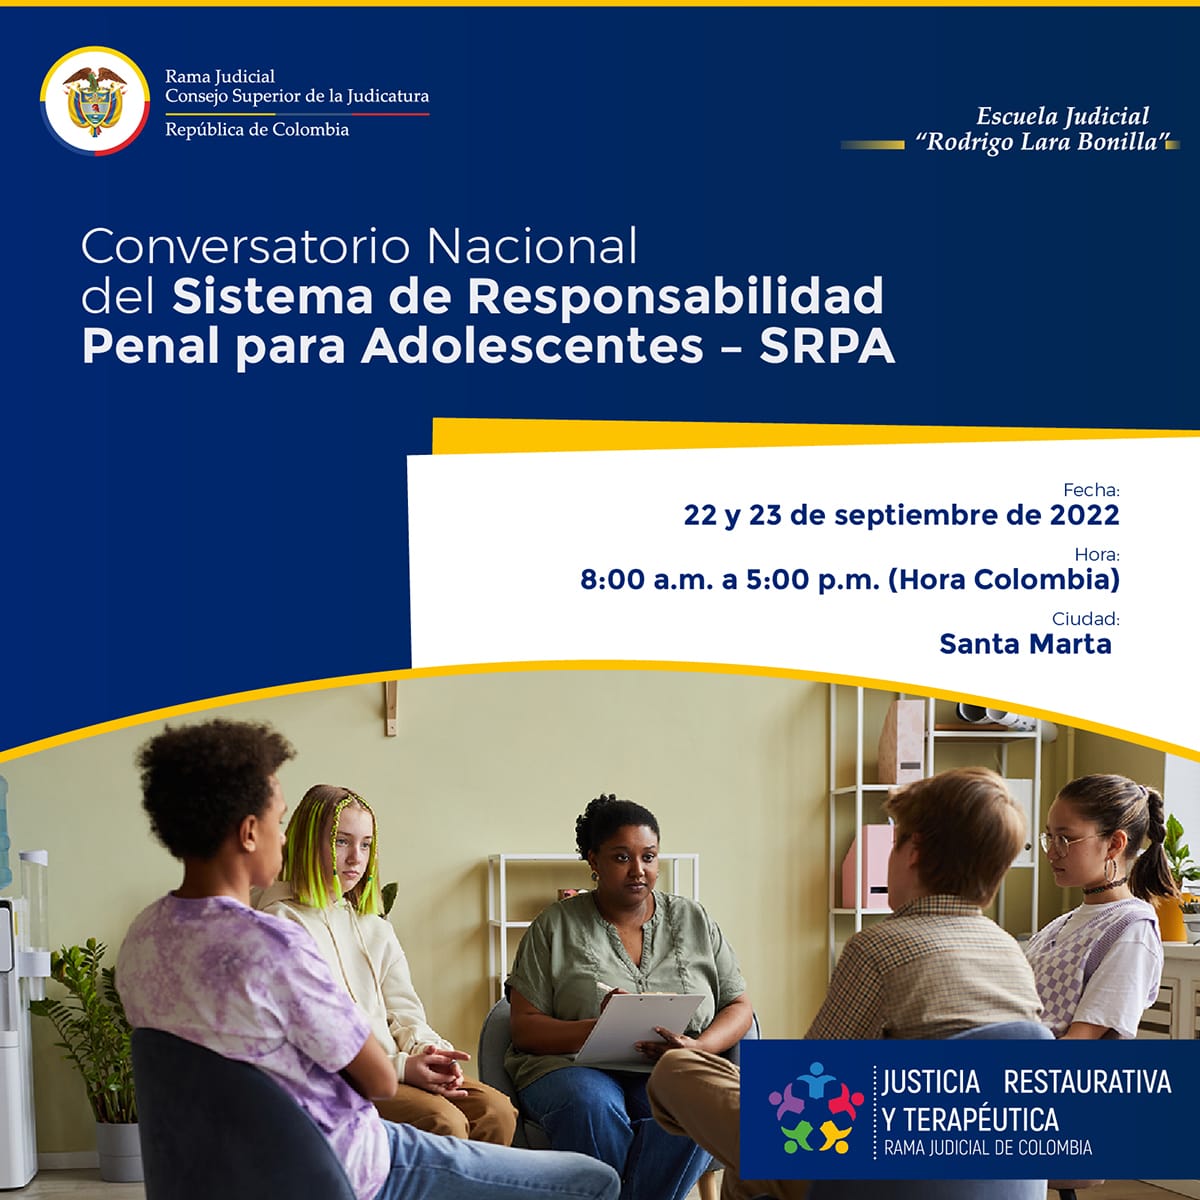 Judicatura realizó el Conversatorio Nacional del Sistema de Responsabilidad Penal para Adolescentes -SRPA-